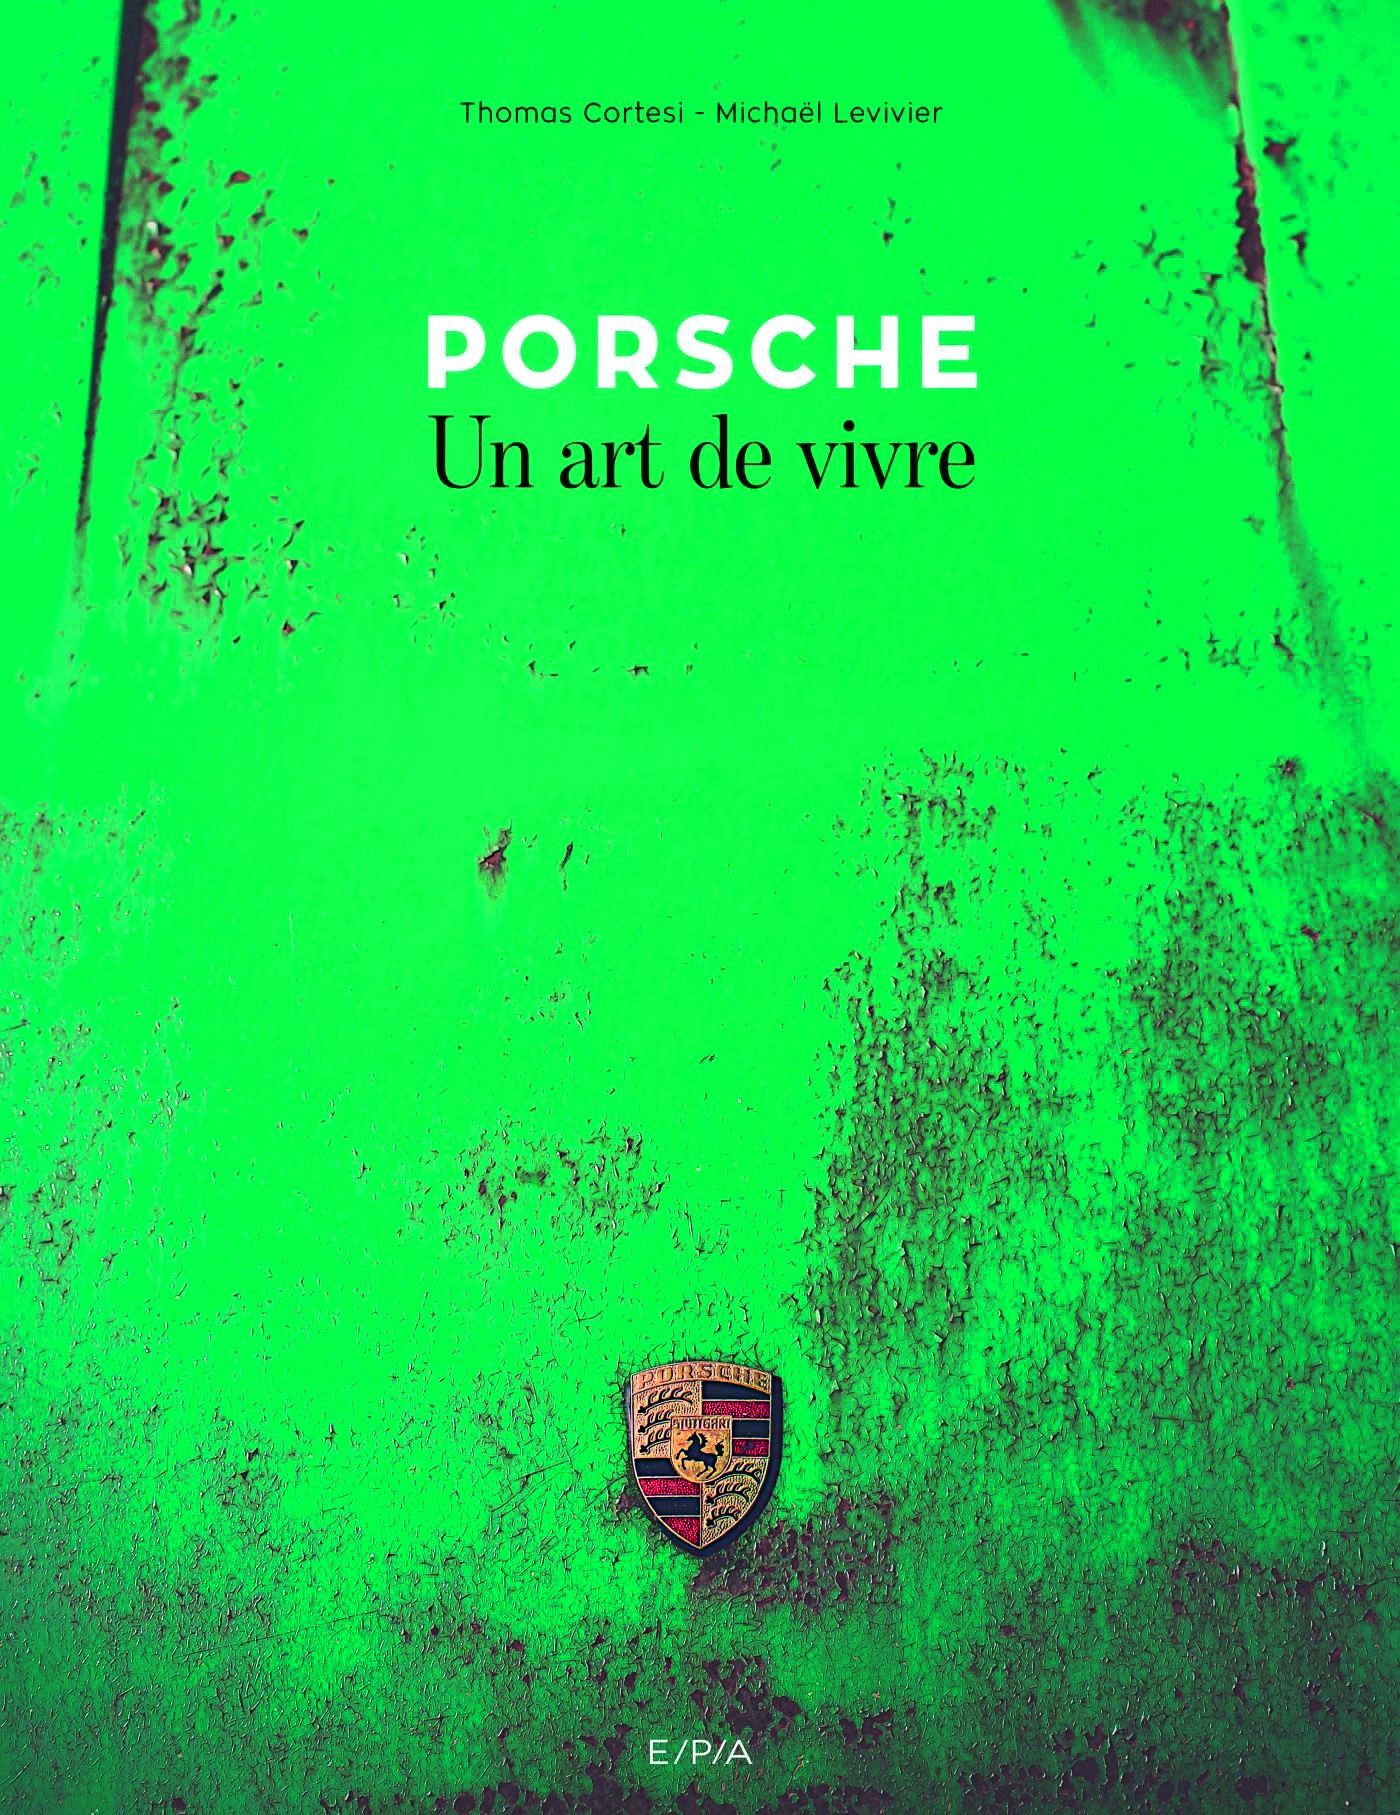 Porsche Un art de vivre